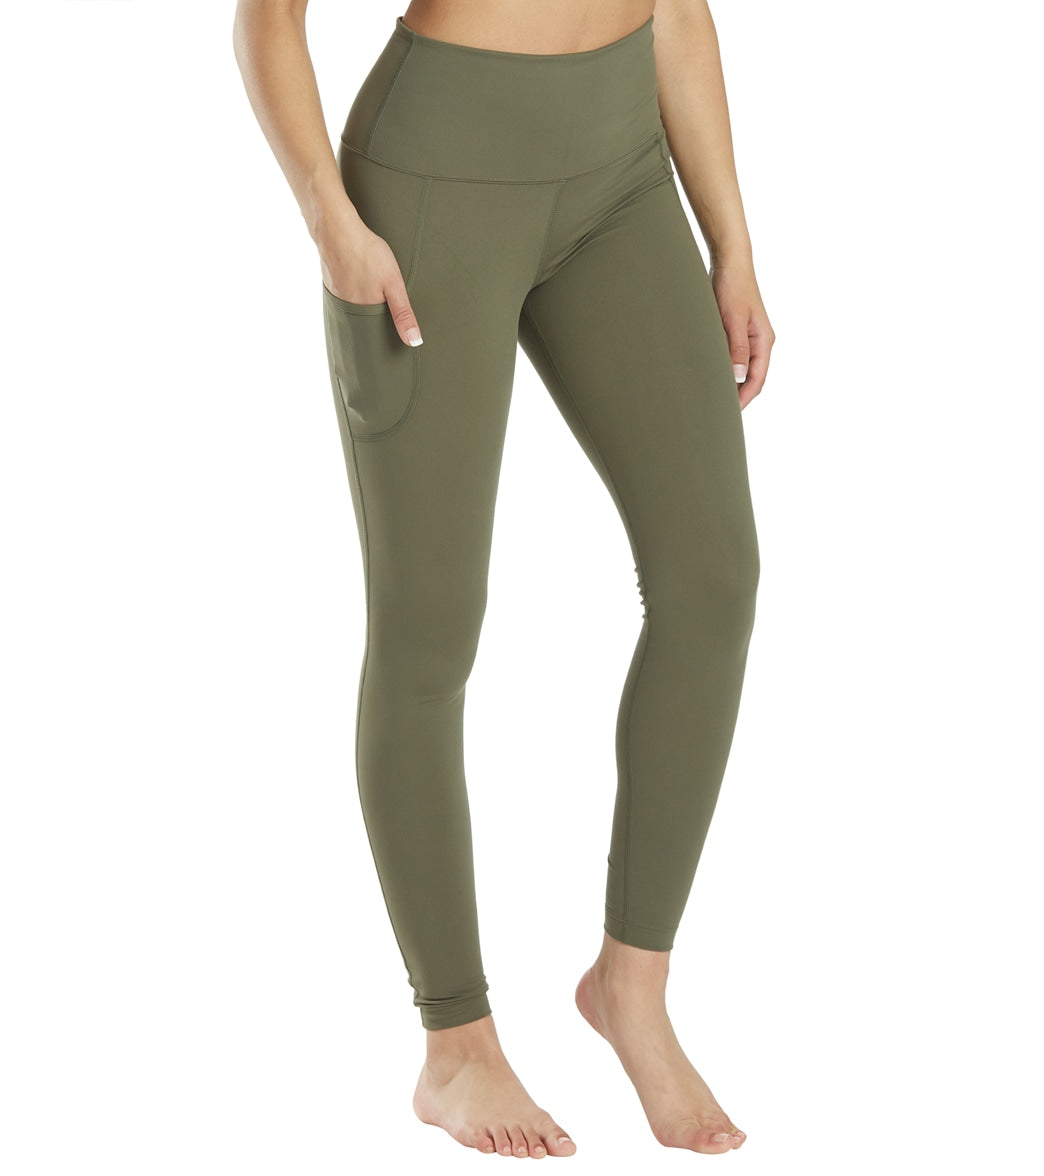 High-Waisted Garment-Dyed Side-Pocket 7/8-Length Leggings For Women